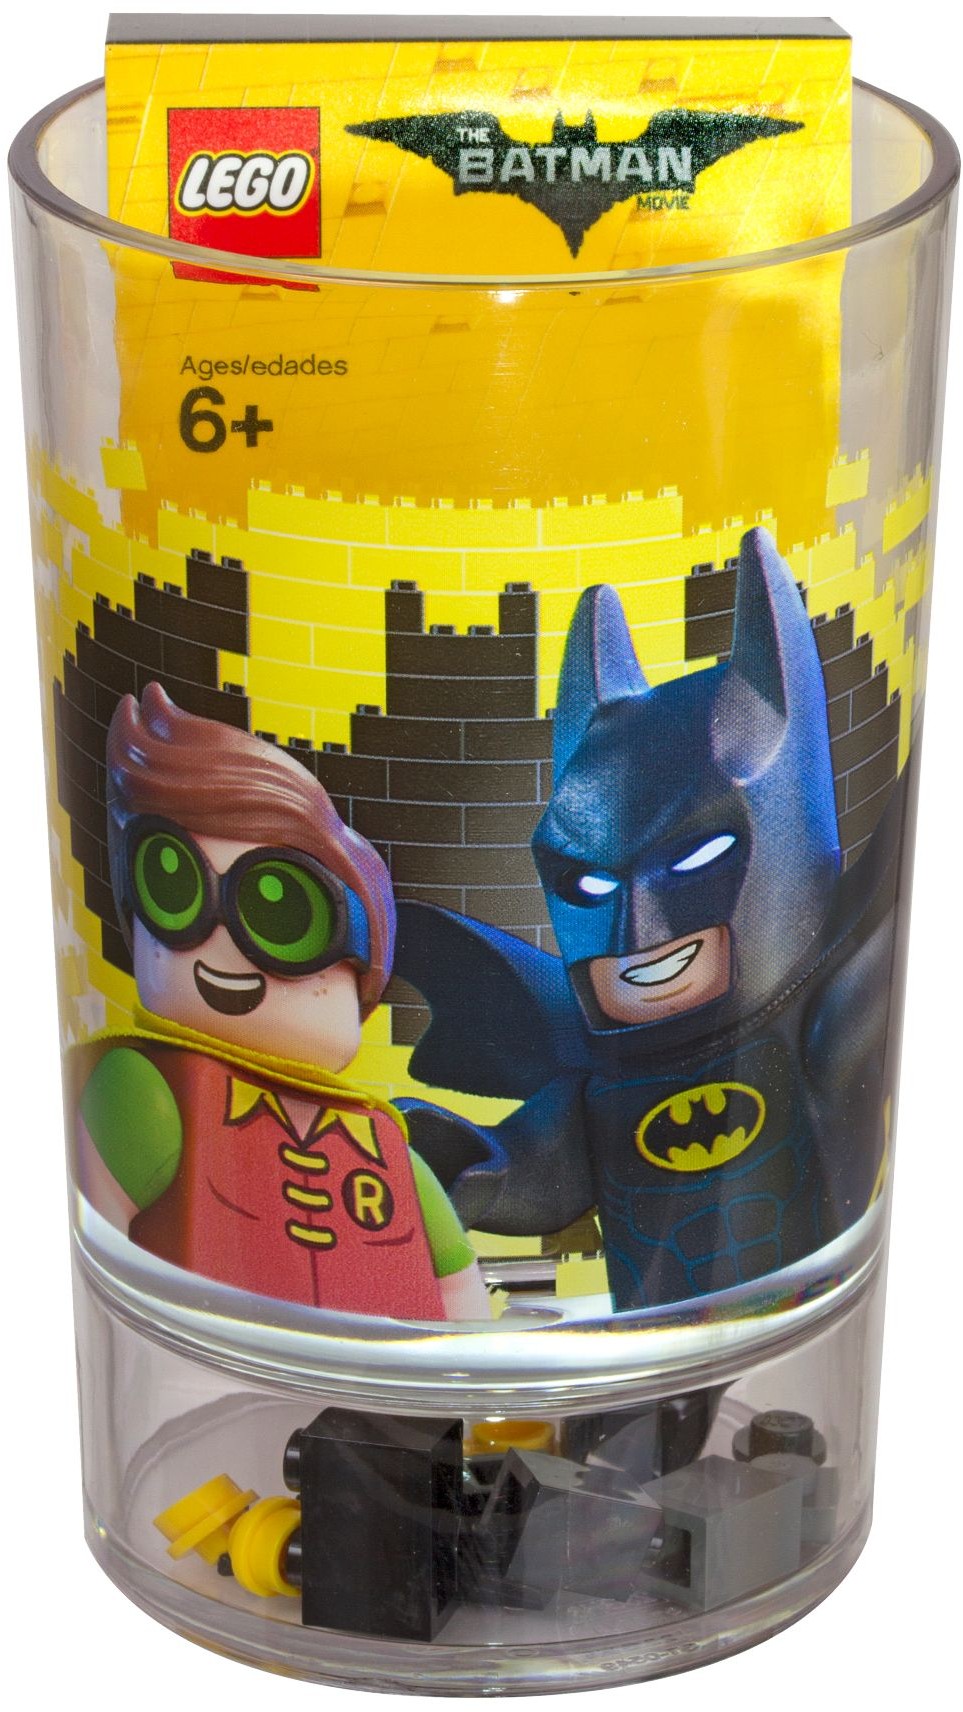 Стакан питьевой Lego 853639 Batman Movie с кубиками, пластик